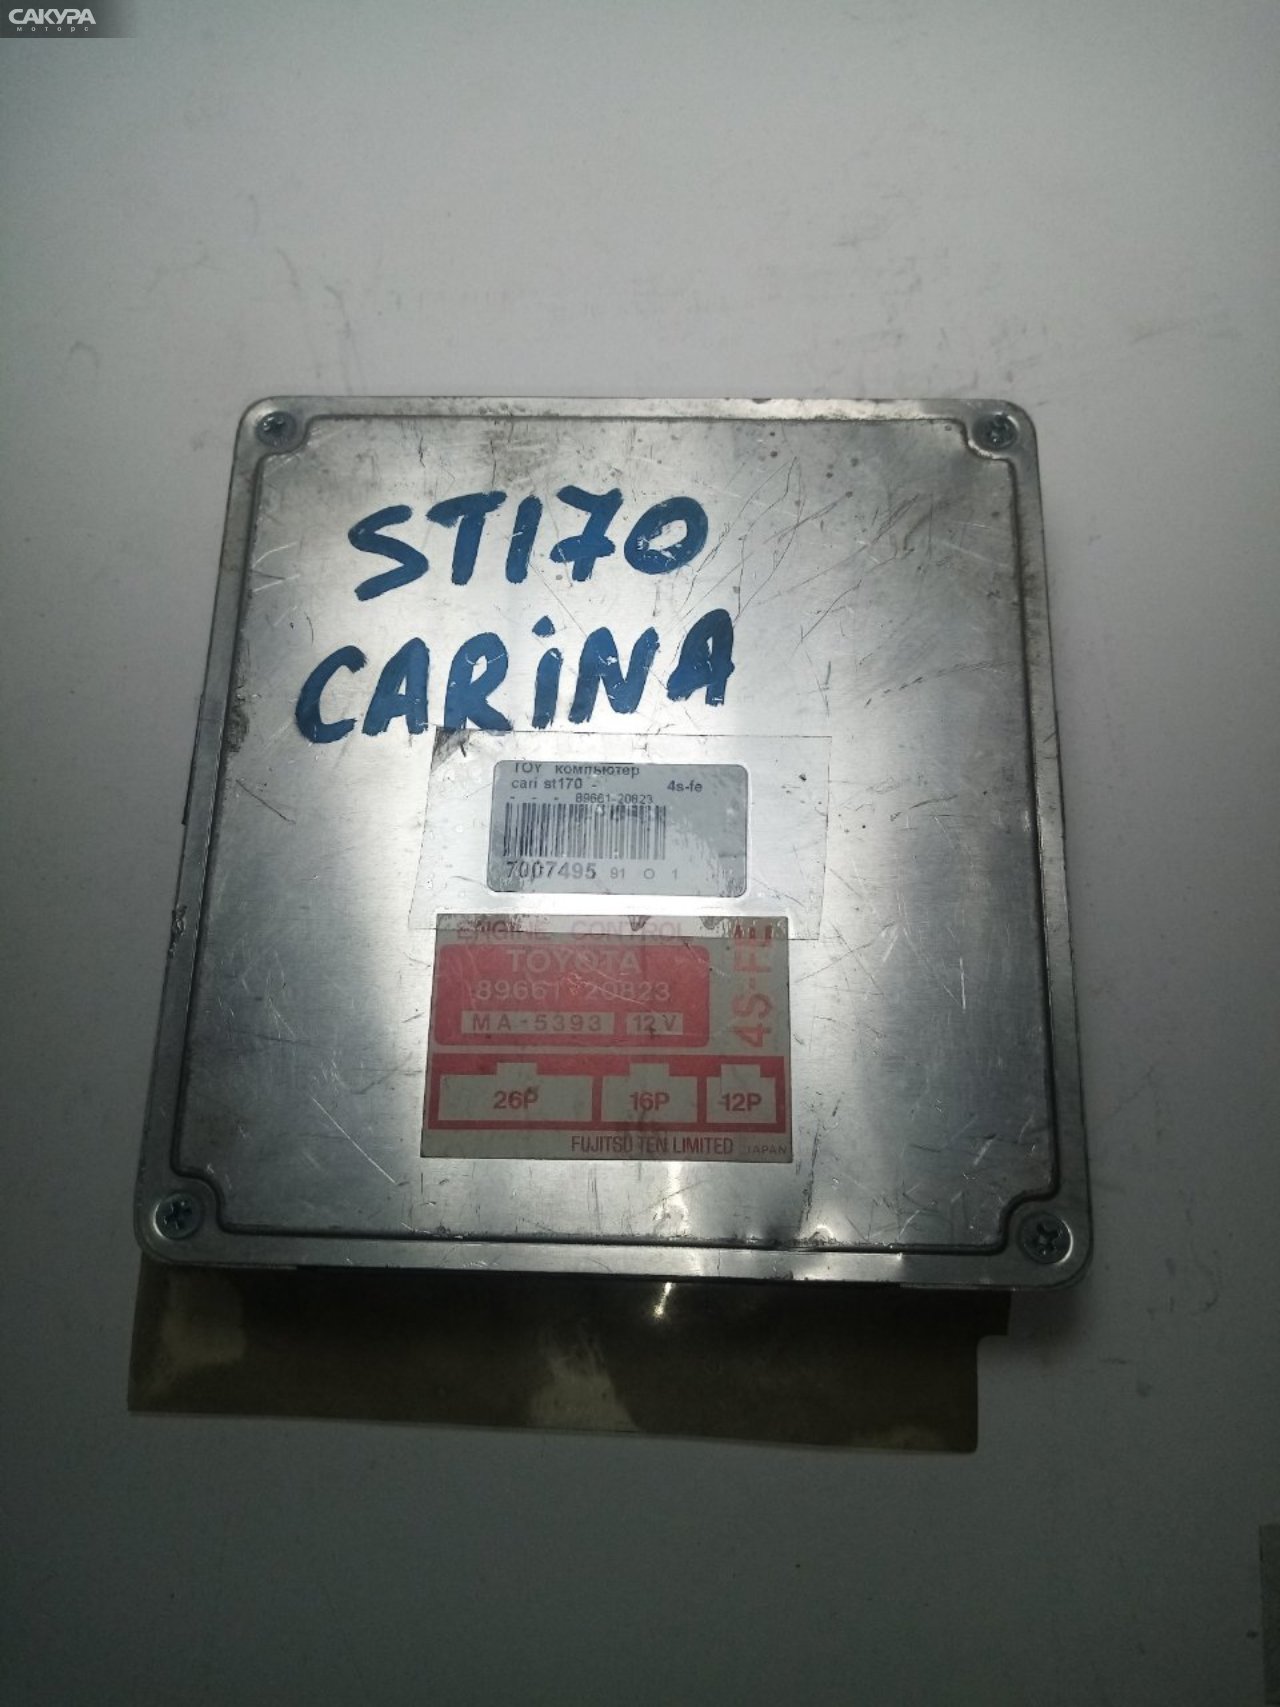 Блок управления ДВС Toyota Carina ST170 4S-FE: купить в Сакура Иркутск.